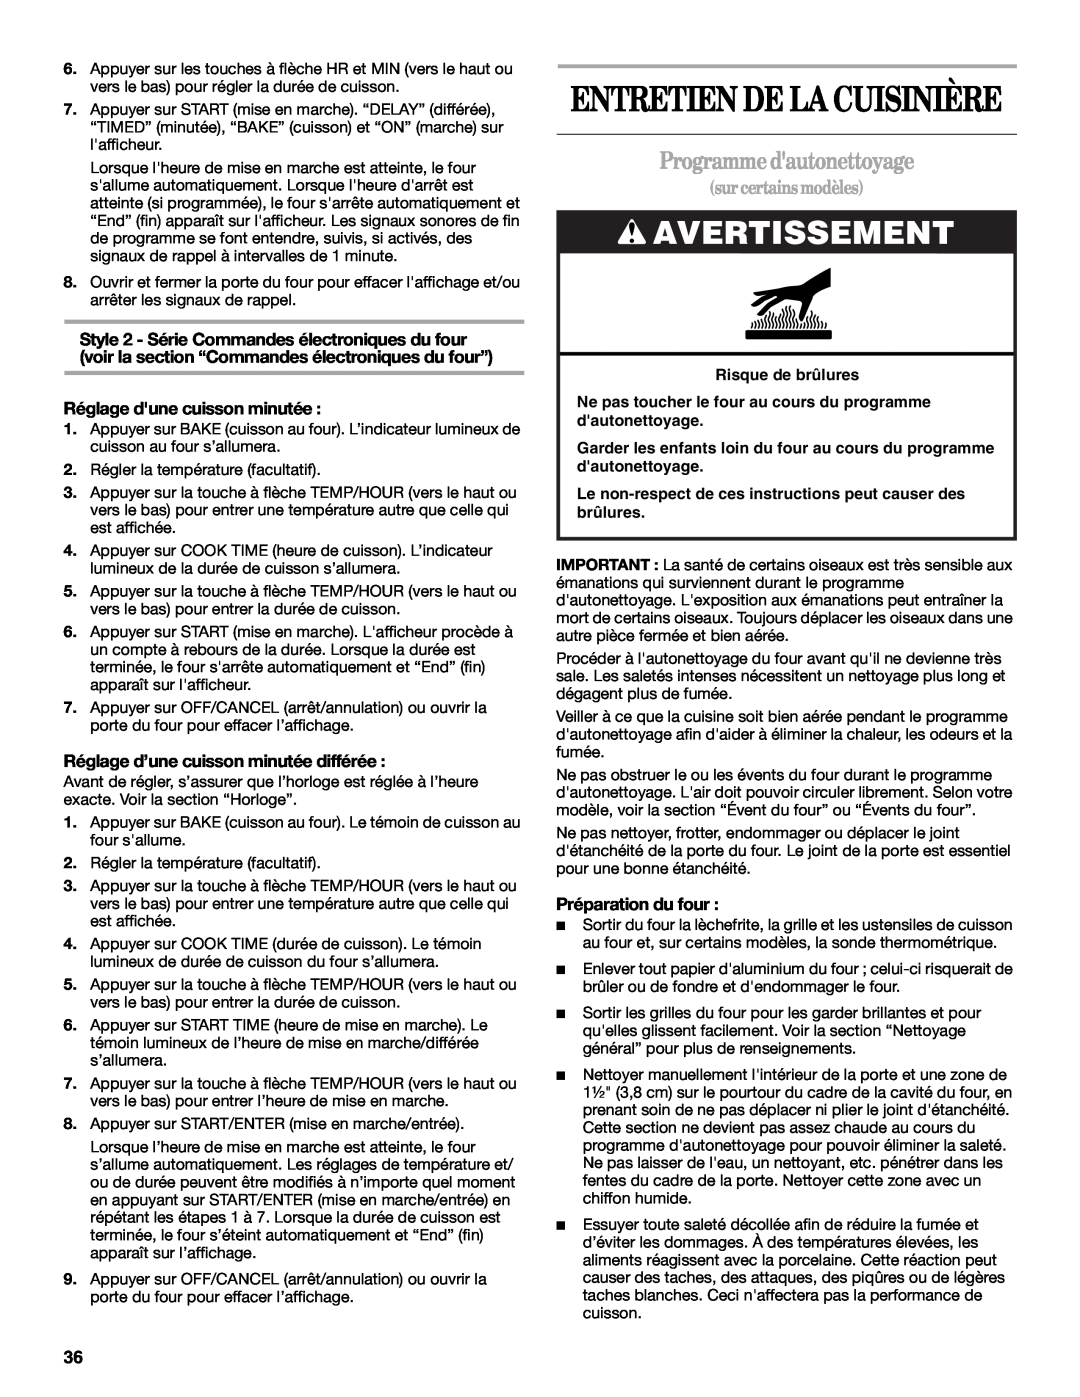 Whirlpool W10110368 manual Entretien De La Cuisinière, Programmedautonettoyage, Avertissement, surcertainsmodèles 